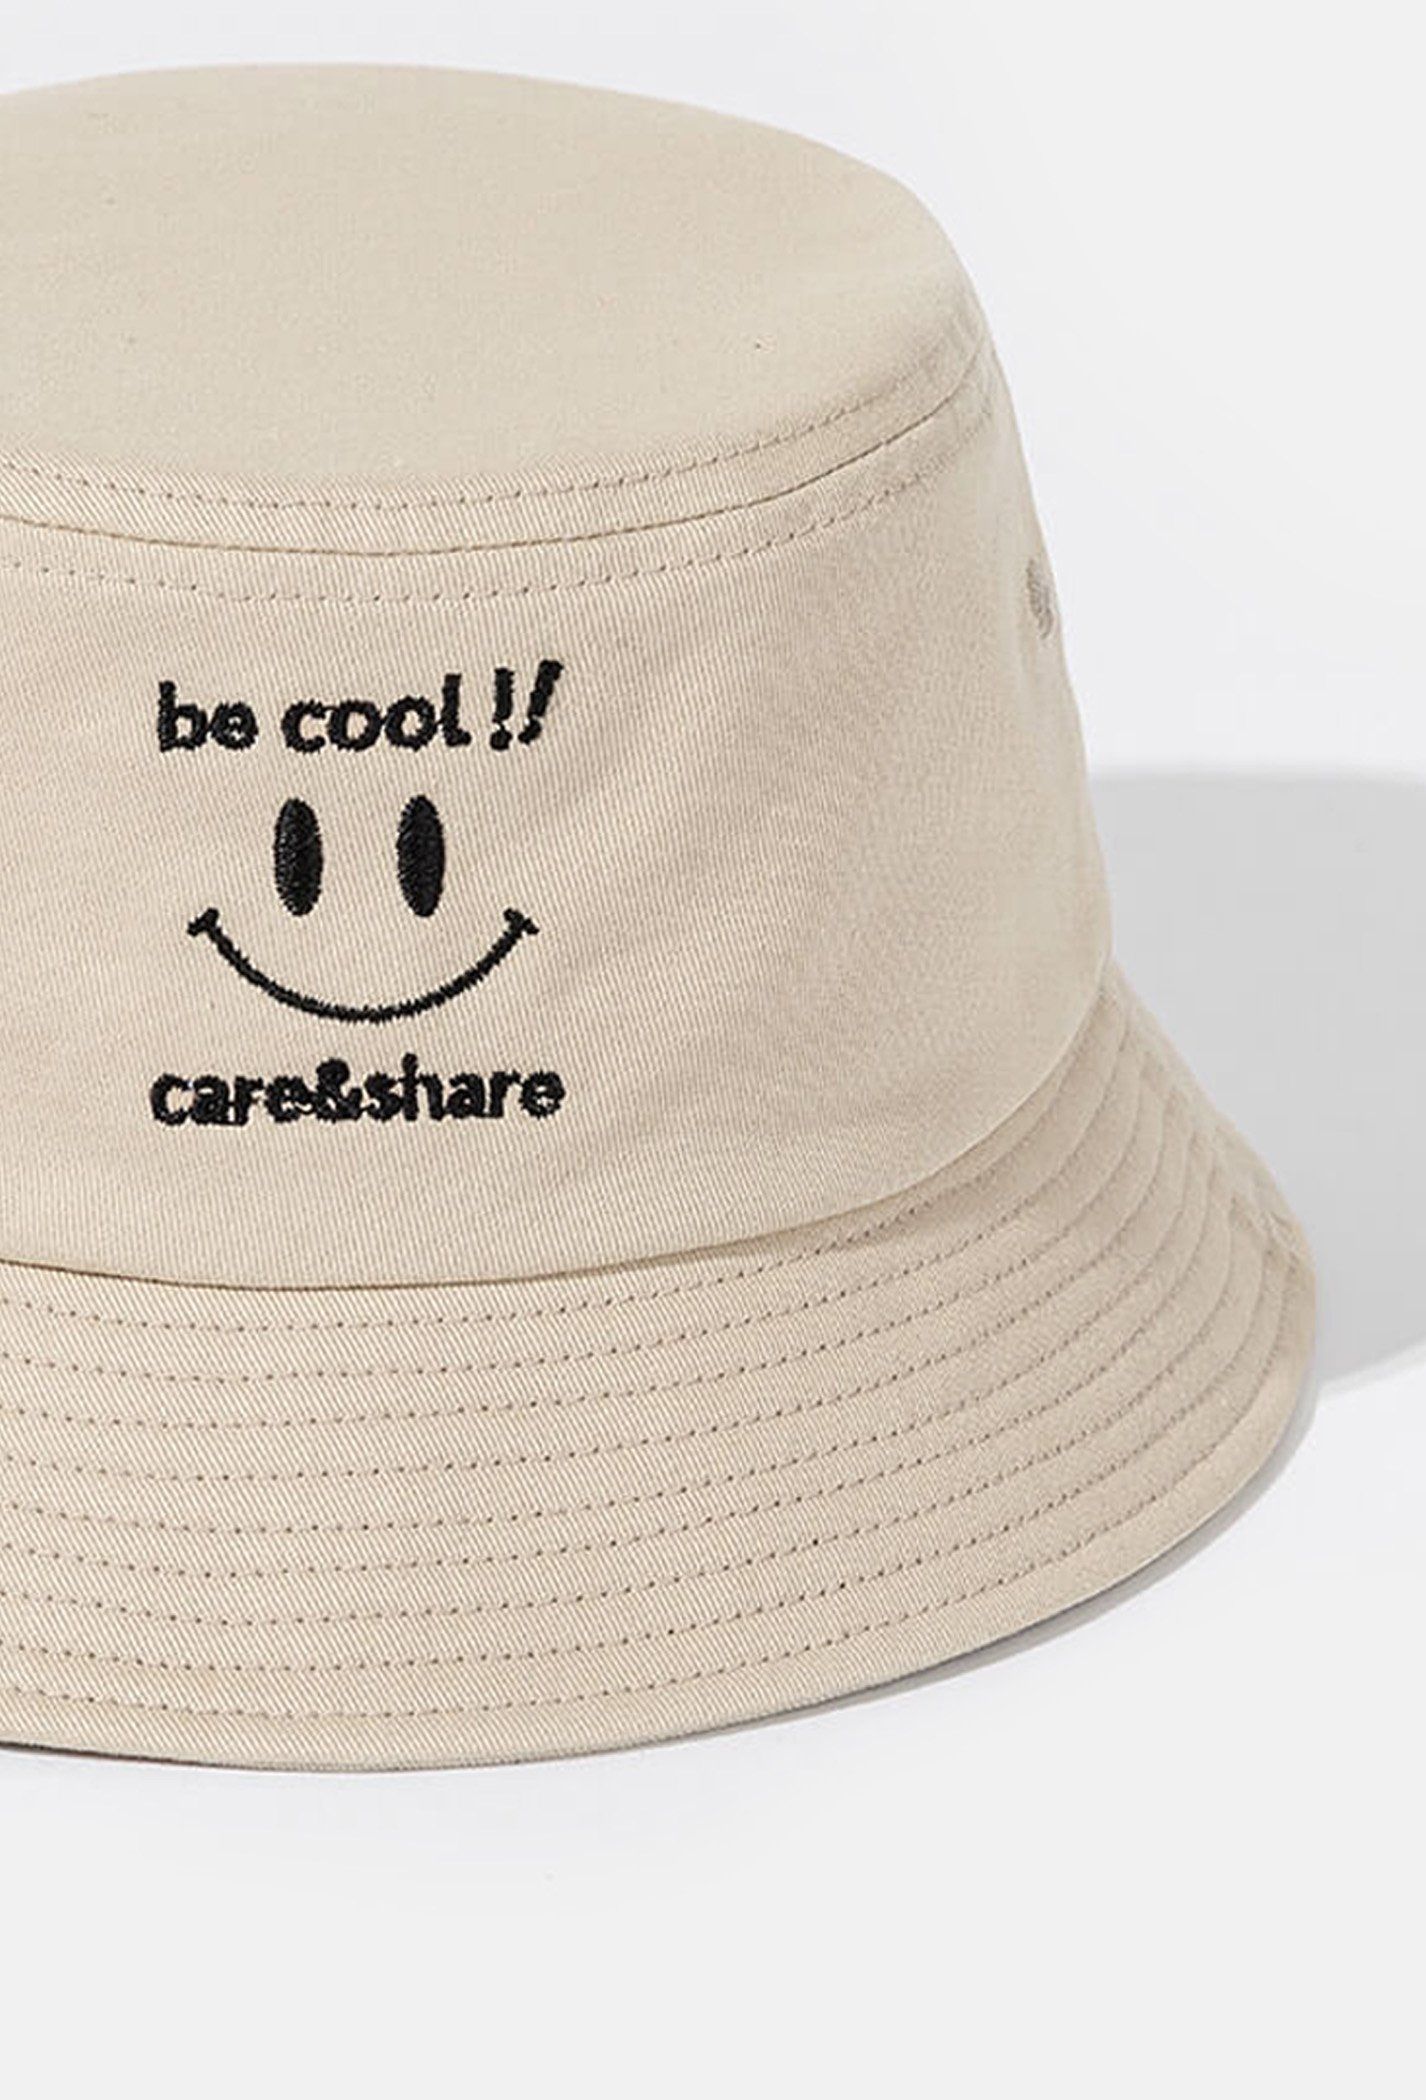 Mũ/Nón Bucket Hat thêu Be Cool!!  Be 2